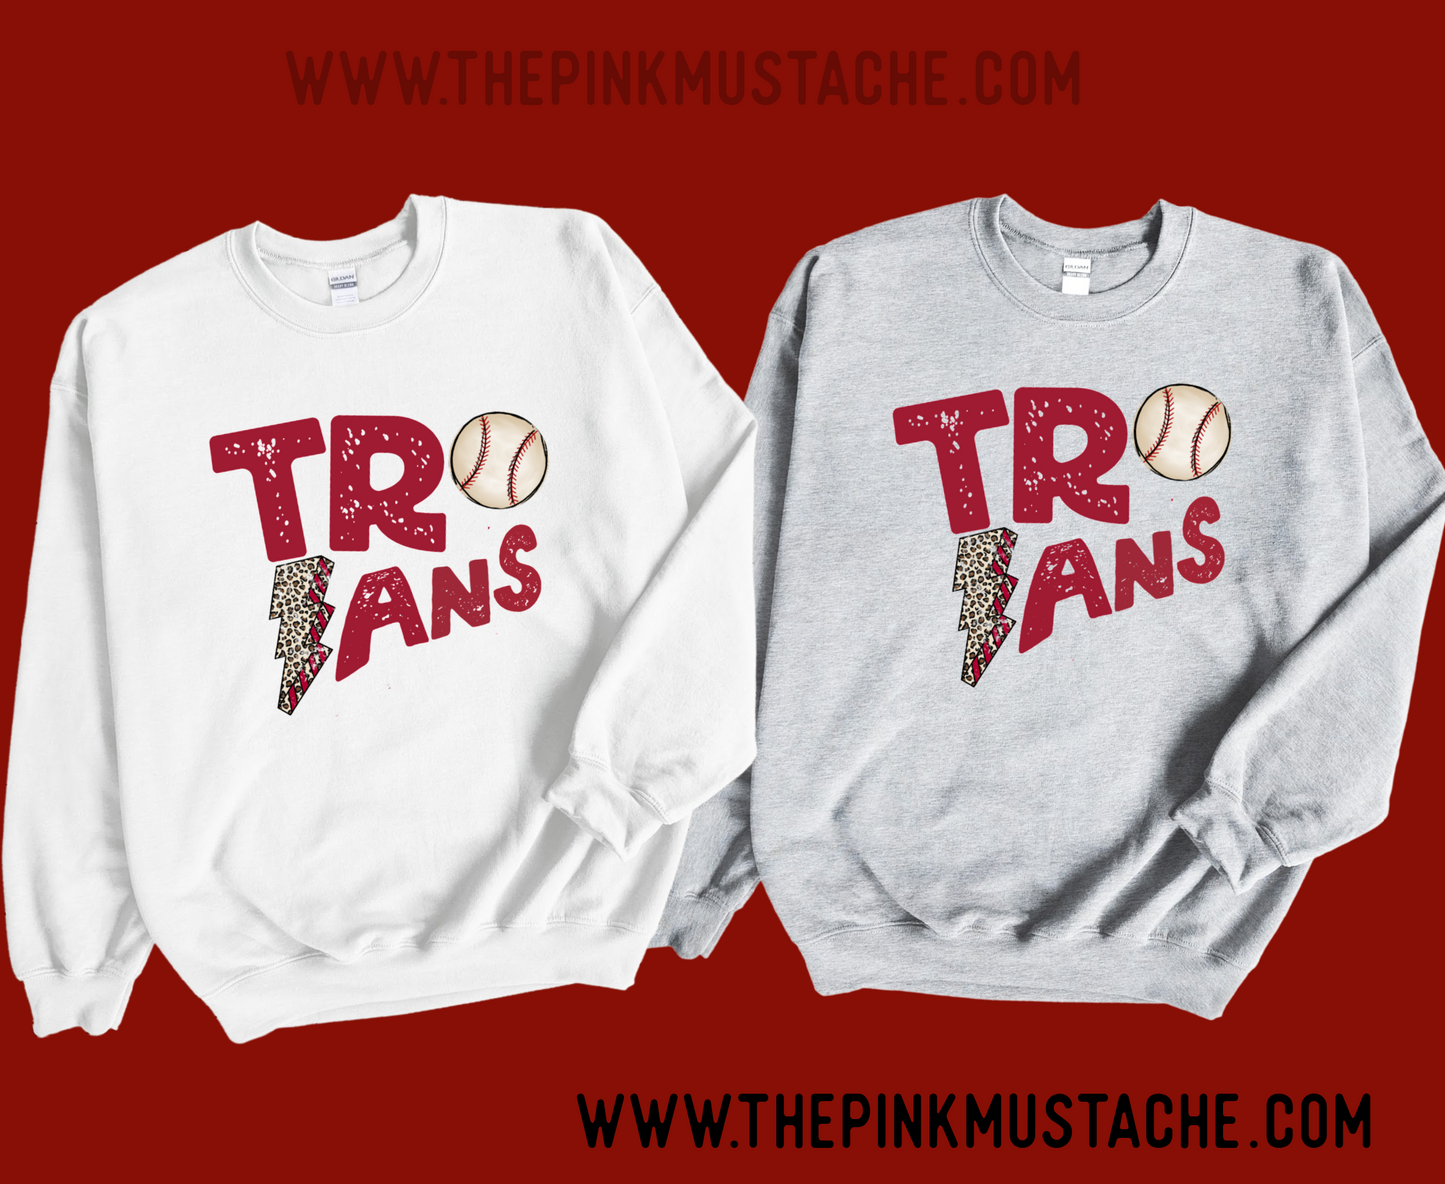 Trojans Baseball Lightning Bolt Unisex Sweatshirt/ Youth and Adult Sizes